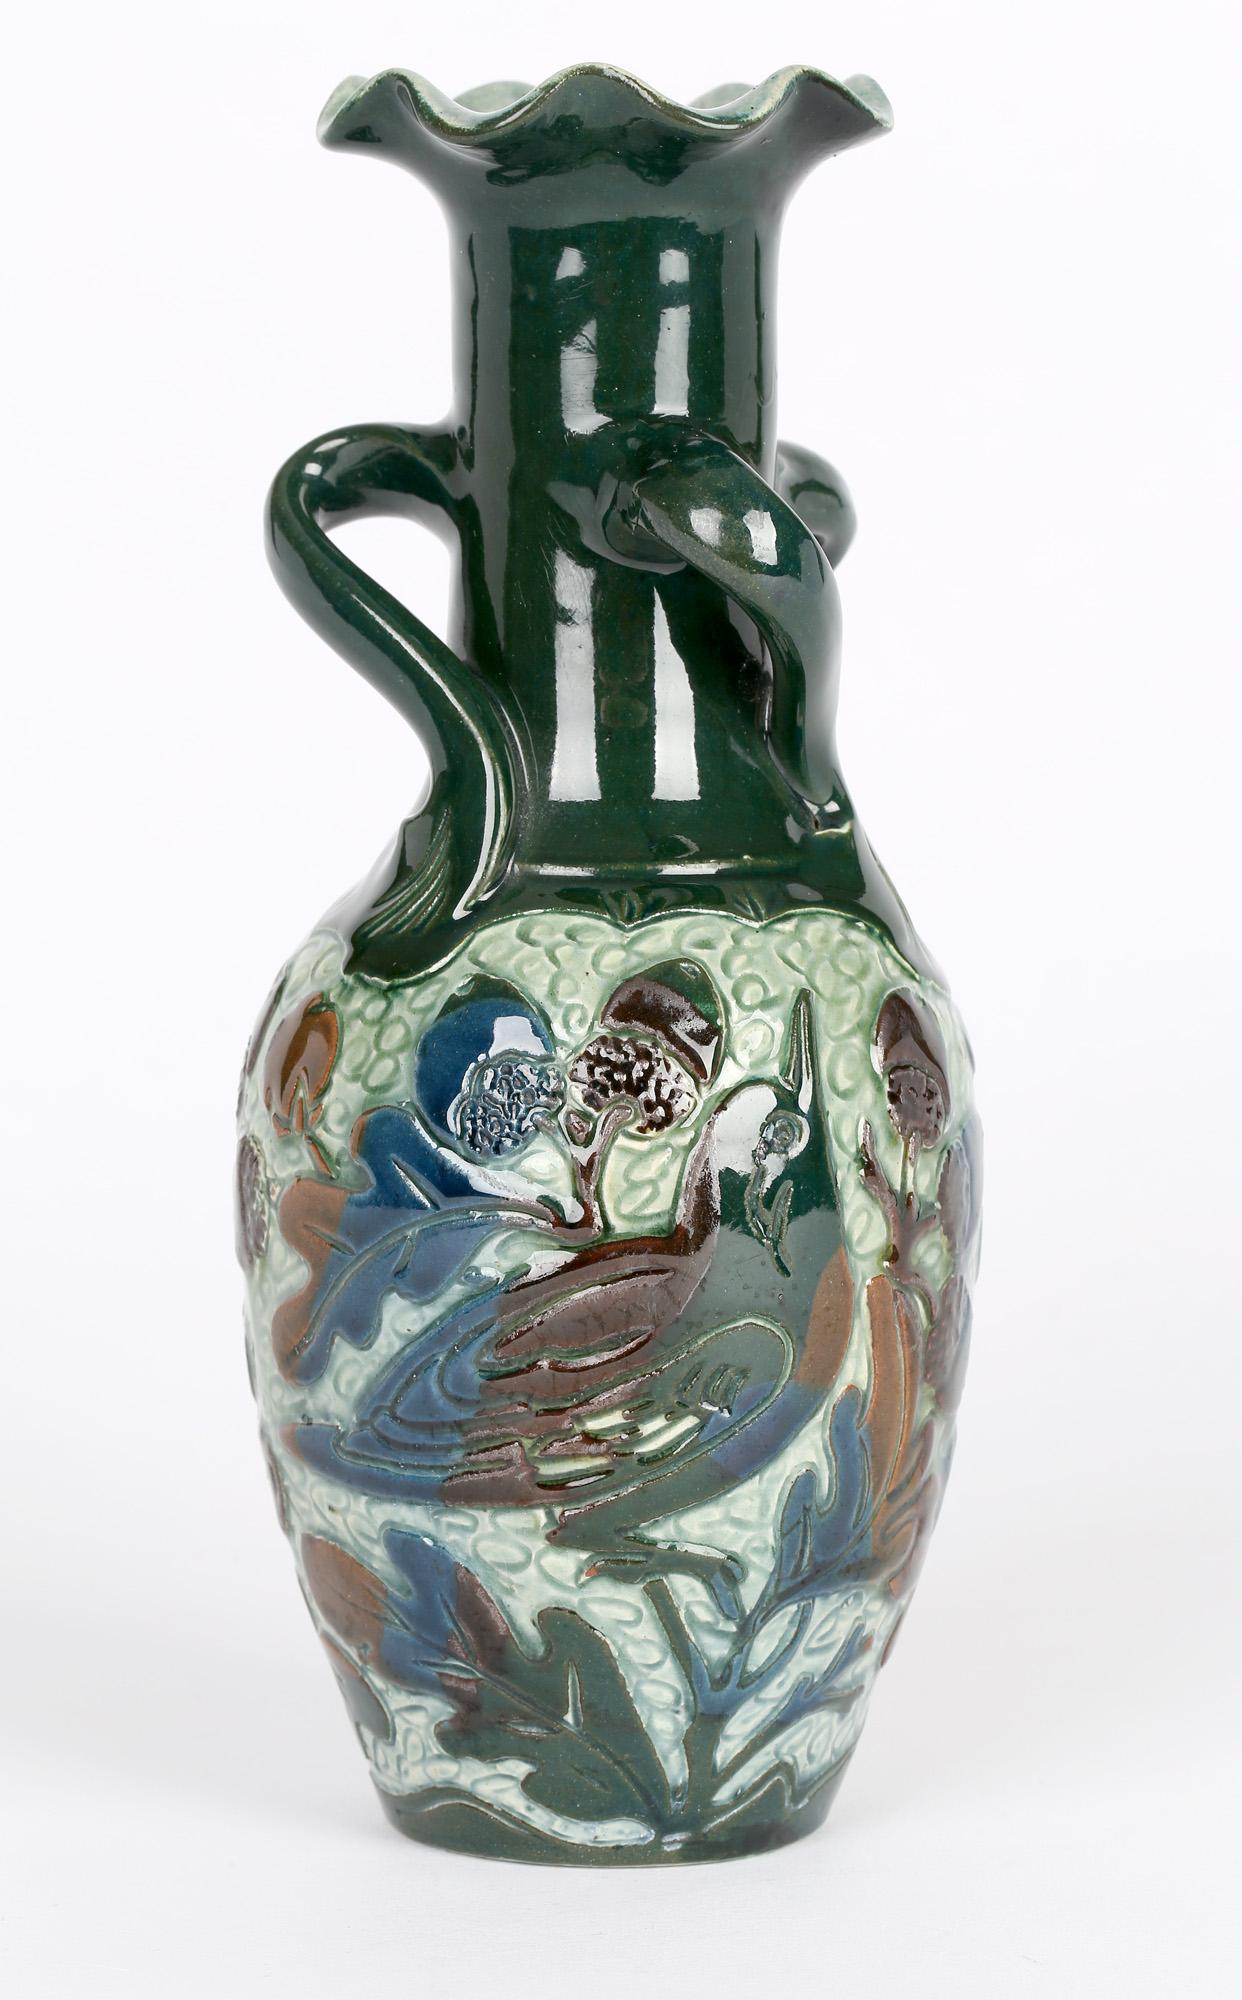 Superbe vase à trois anses en poterie d'art à motif sgraffite décoré de deux oiseaux perchés sur des branches de chêne par Alexander Lauder, Barnstaple, datant d'environ 1890. Ce vase de qualité est fabriqué en argile locale et a la forme d'une